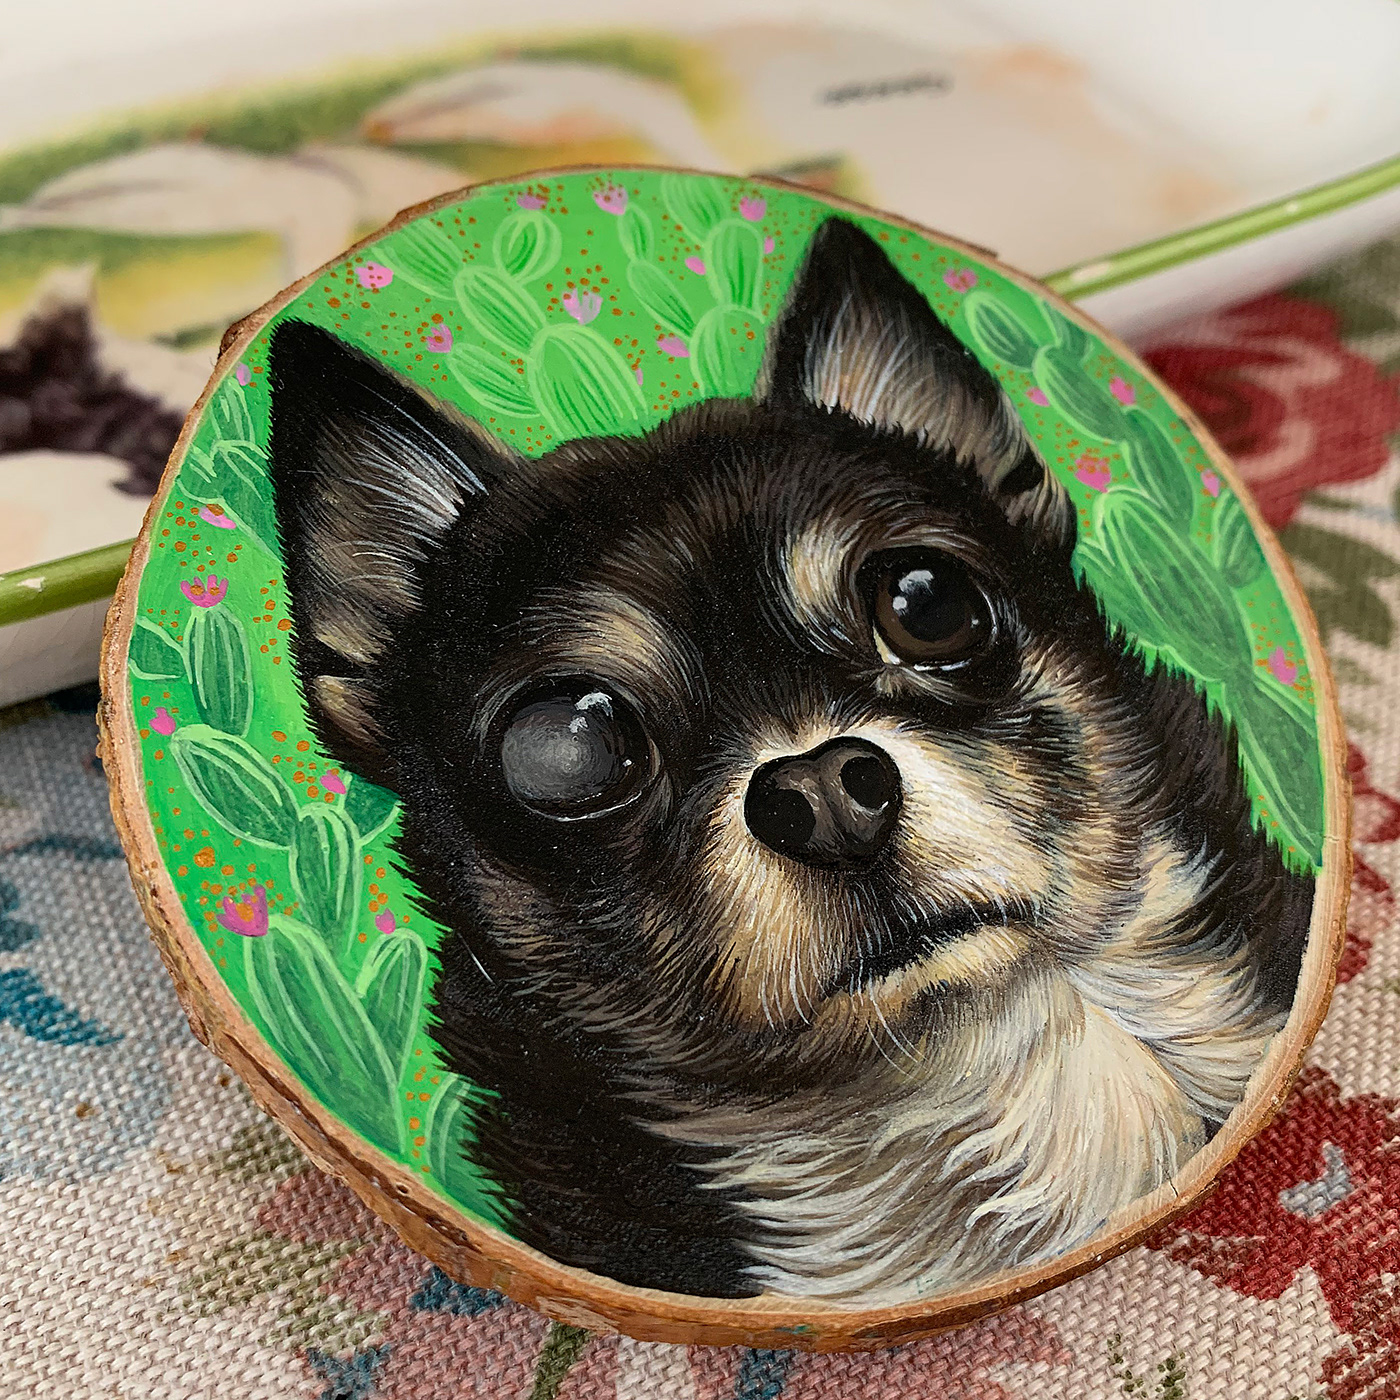 acrylic albugo chihuahua dog painting   portrait slice of wood